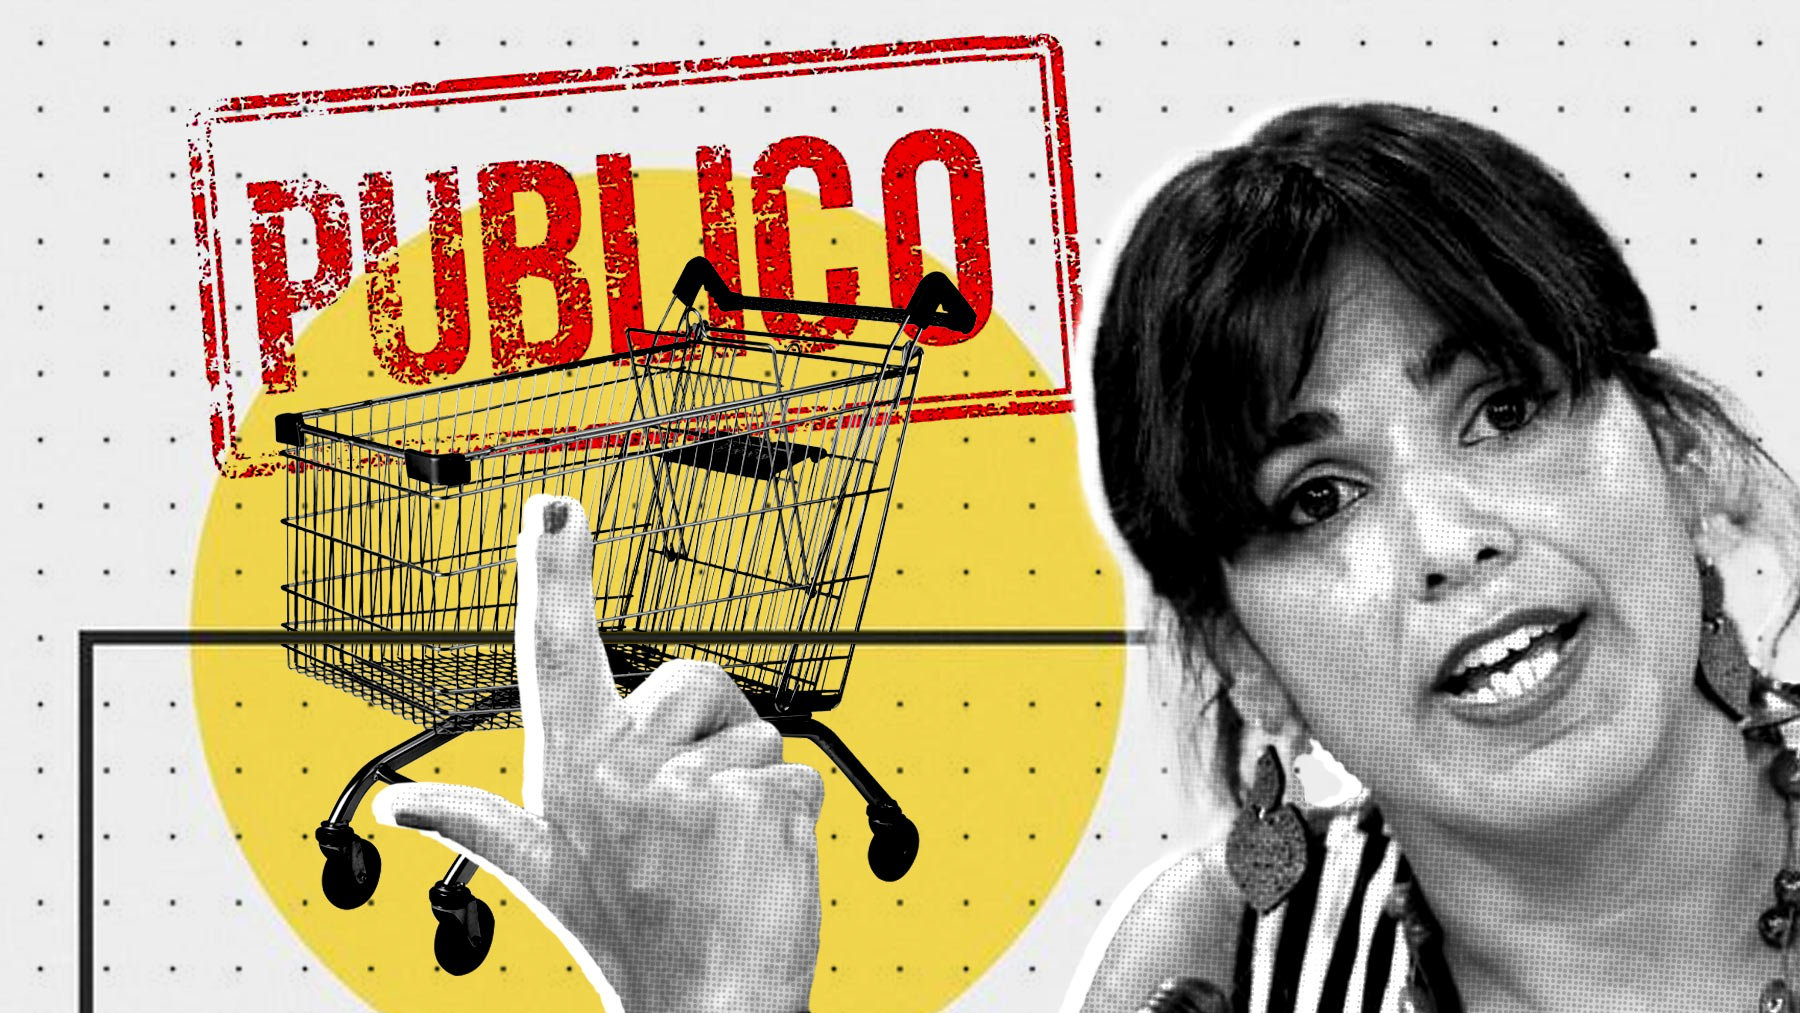 Los de Teresa Rodríguez piden supermercados públicos: “Controlar precios está bien, pero es insuficiente”.